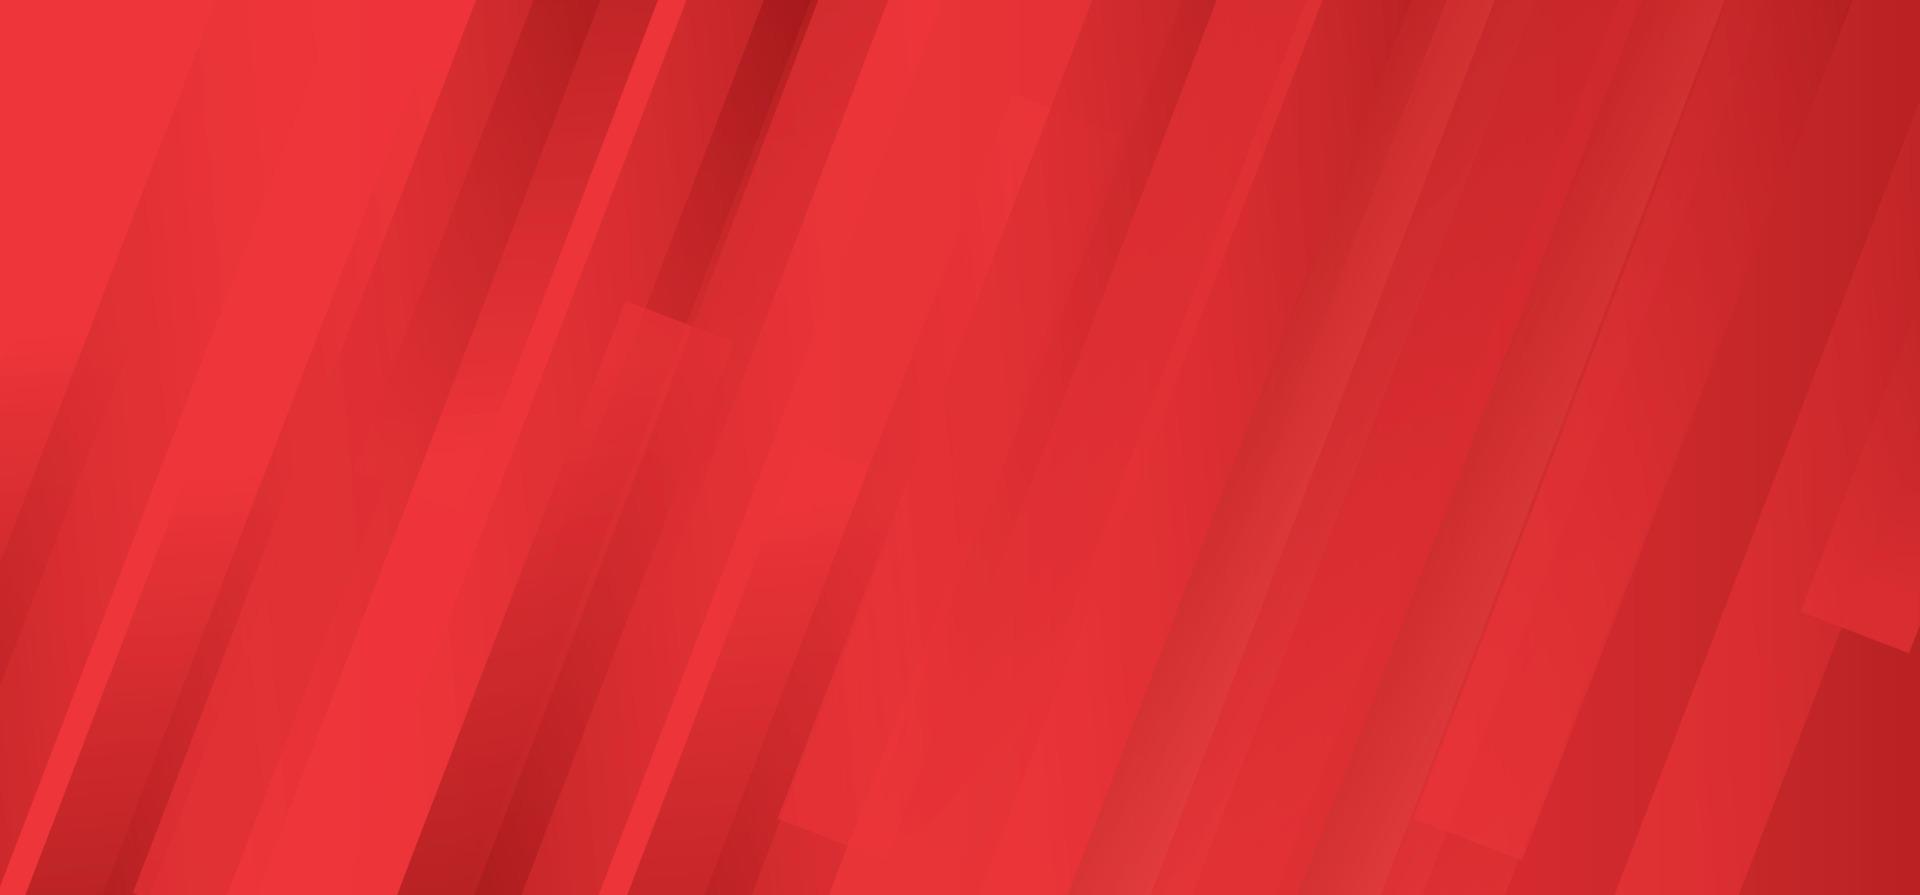 sfondo astratto rosso grafico futuristico moderno hipster. modello astratto di vettore minimalista moderno